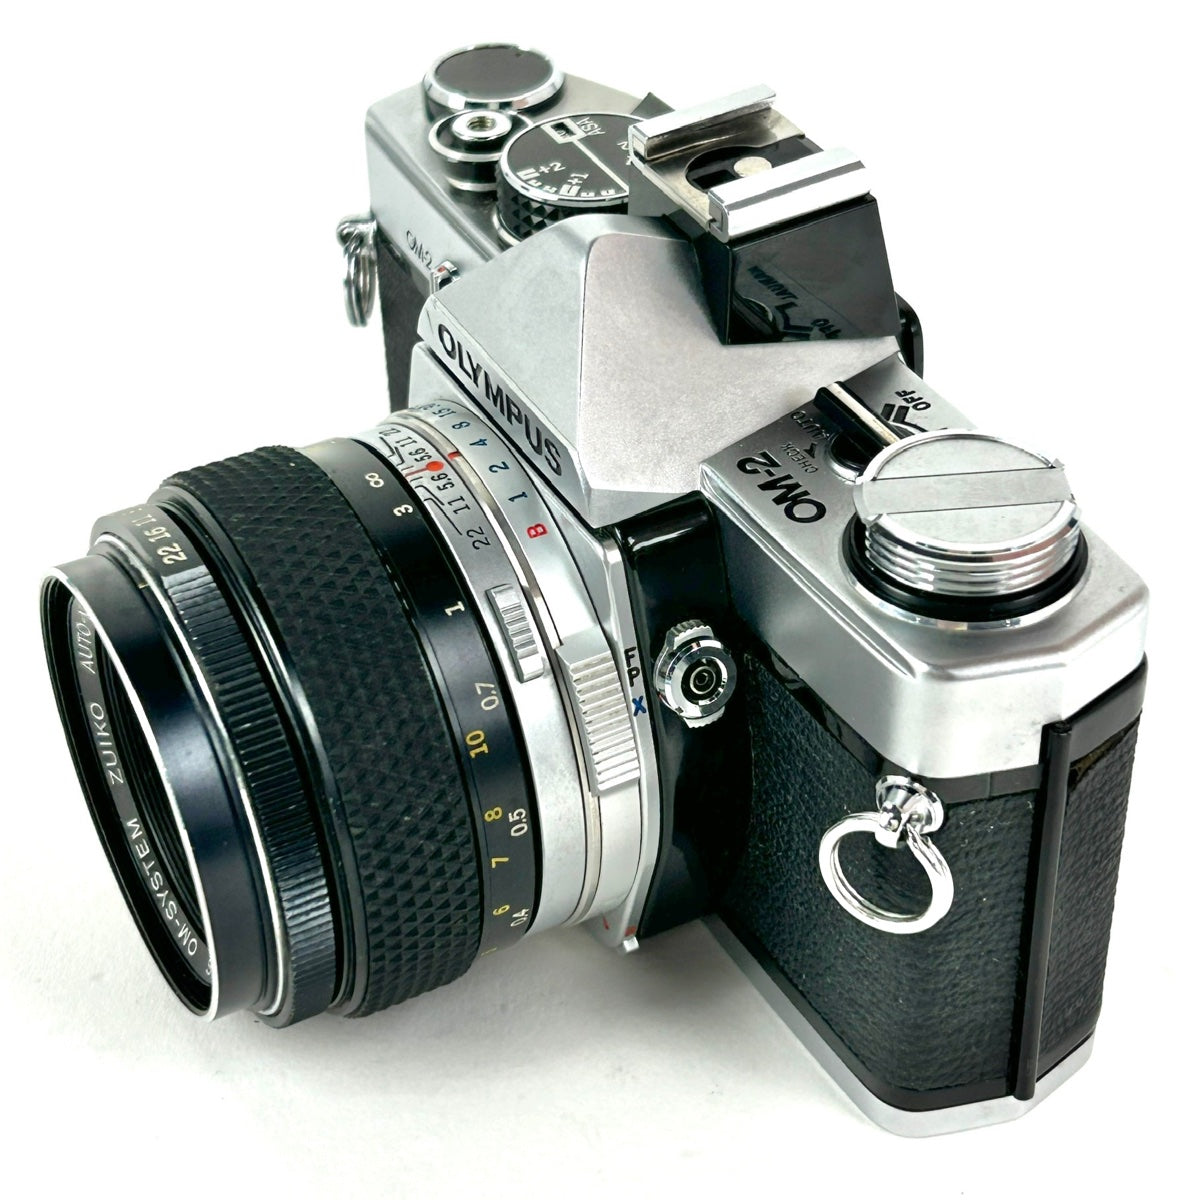 オリンパス Olympus μ-15 Digital & μ-II 110 - デジタルカメラ